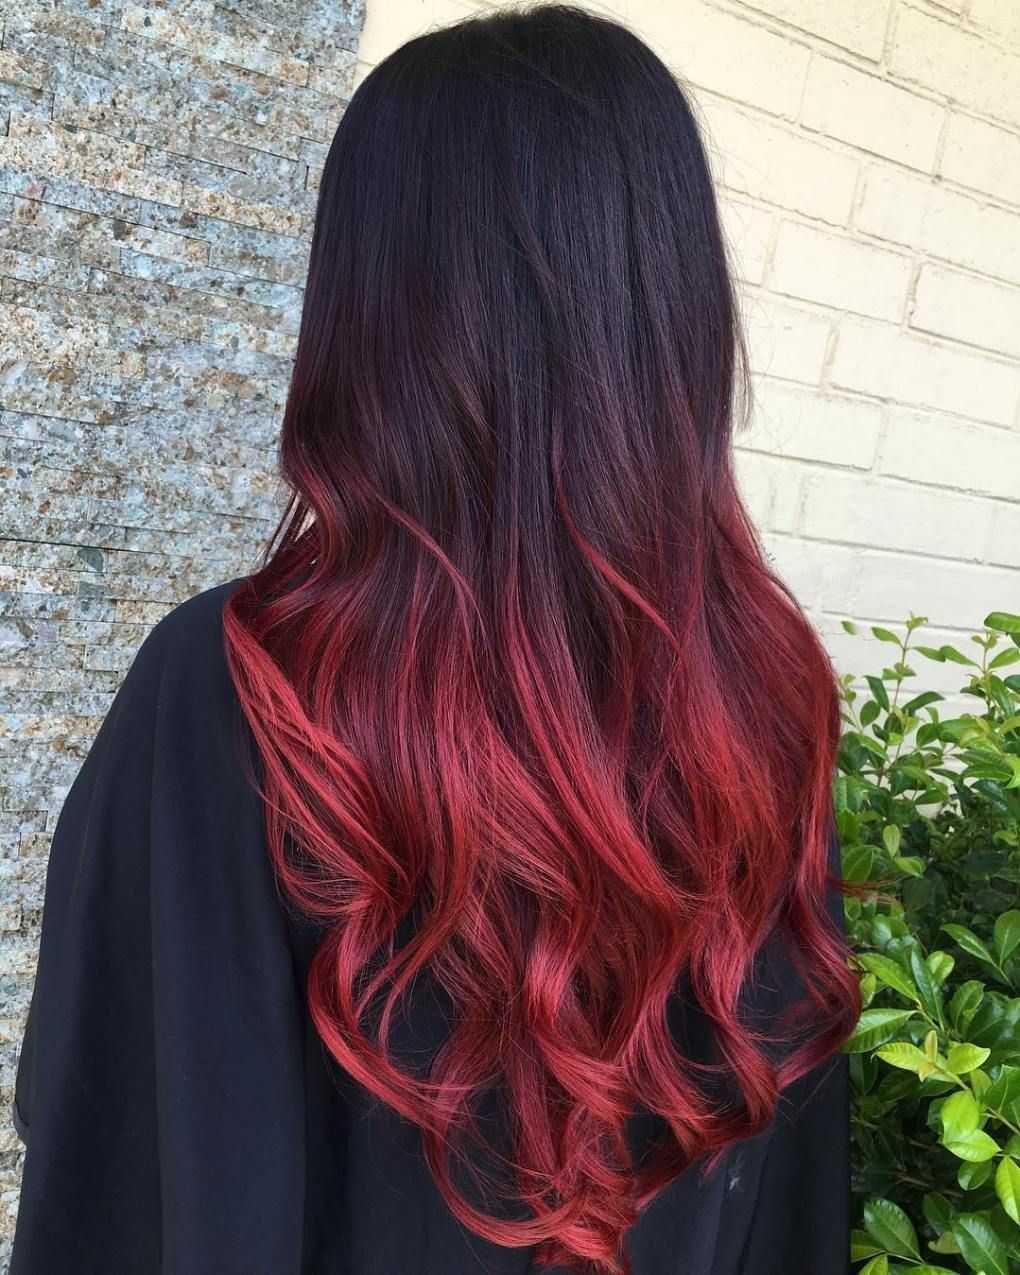 Красный цвет волос можно получить с помощью стойкой краски или хны Чтобы сохранить его интенсивность, нужно воспользоваться советами профессионалов